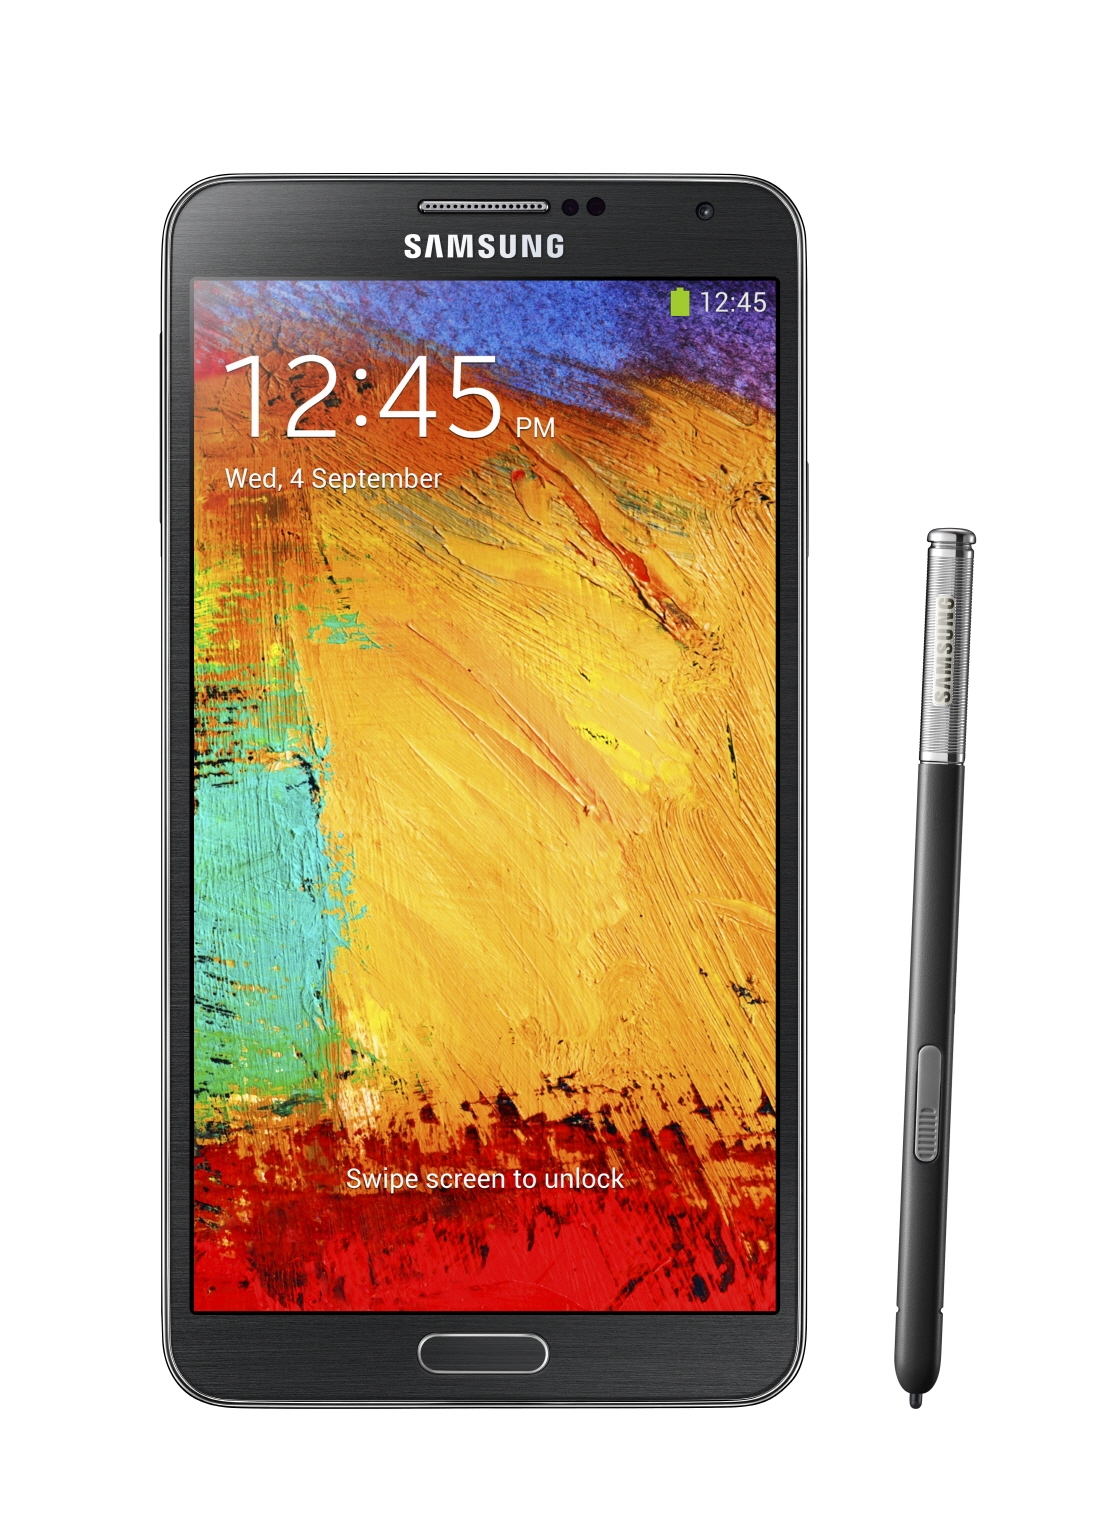 Внешний вид Samsung Galaxy Note III - черный